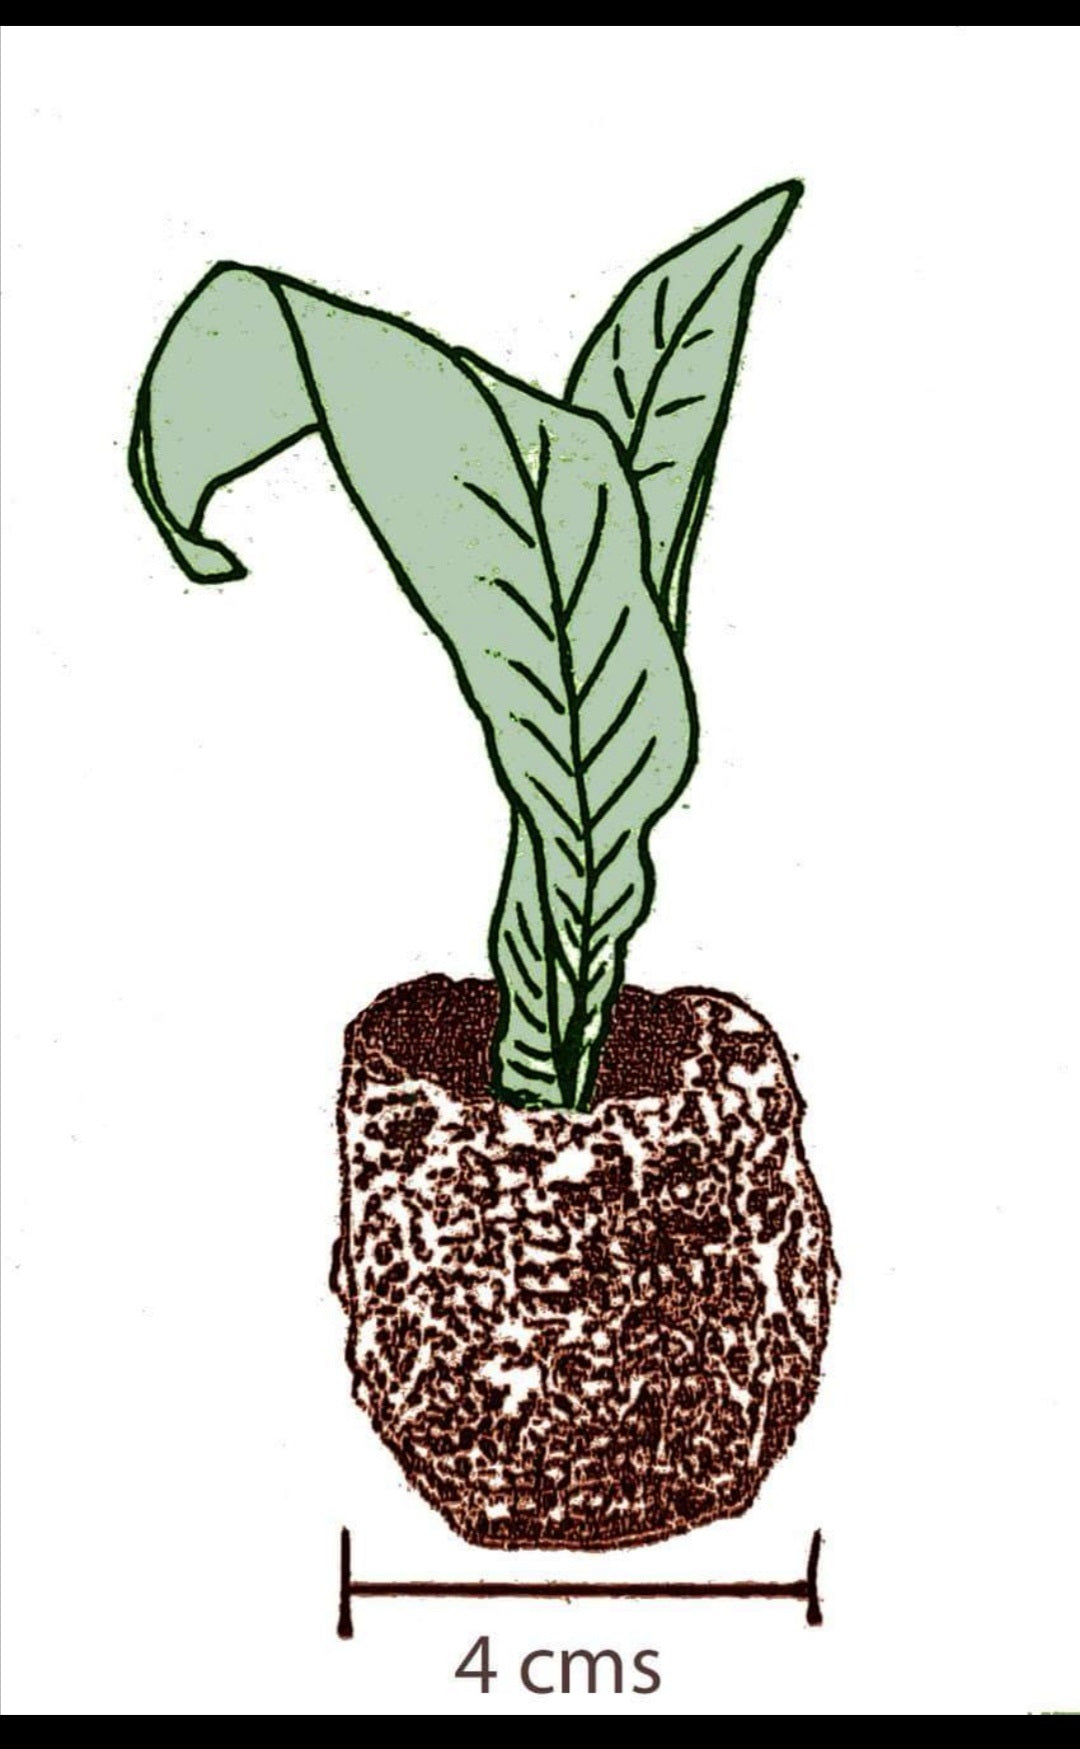 Streptocarpus Olivia